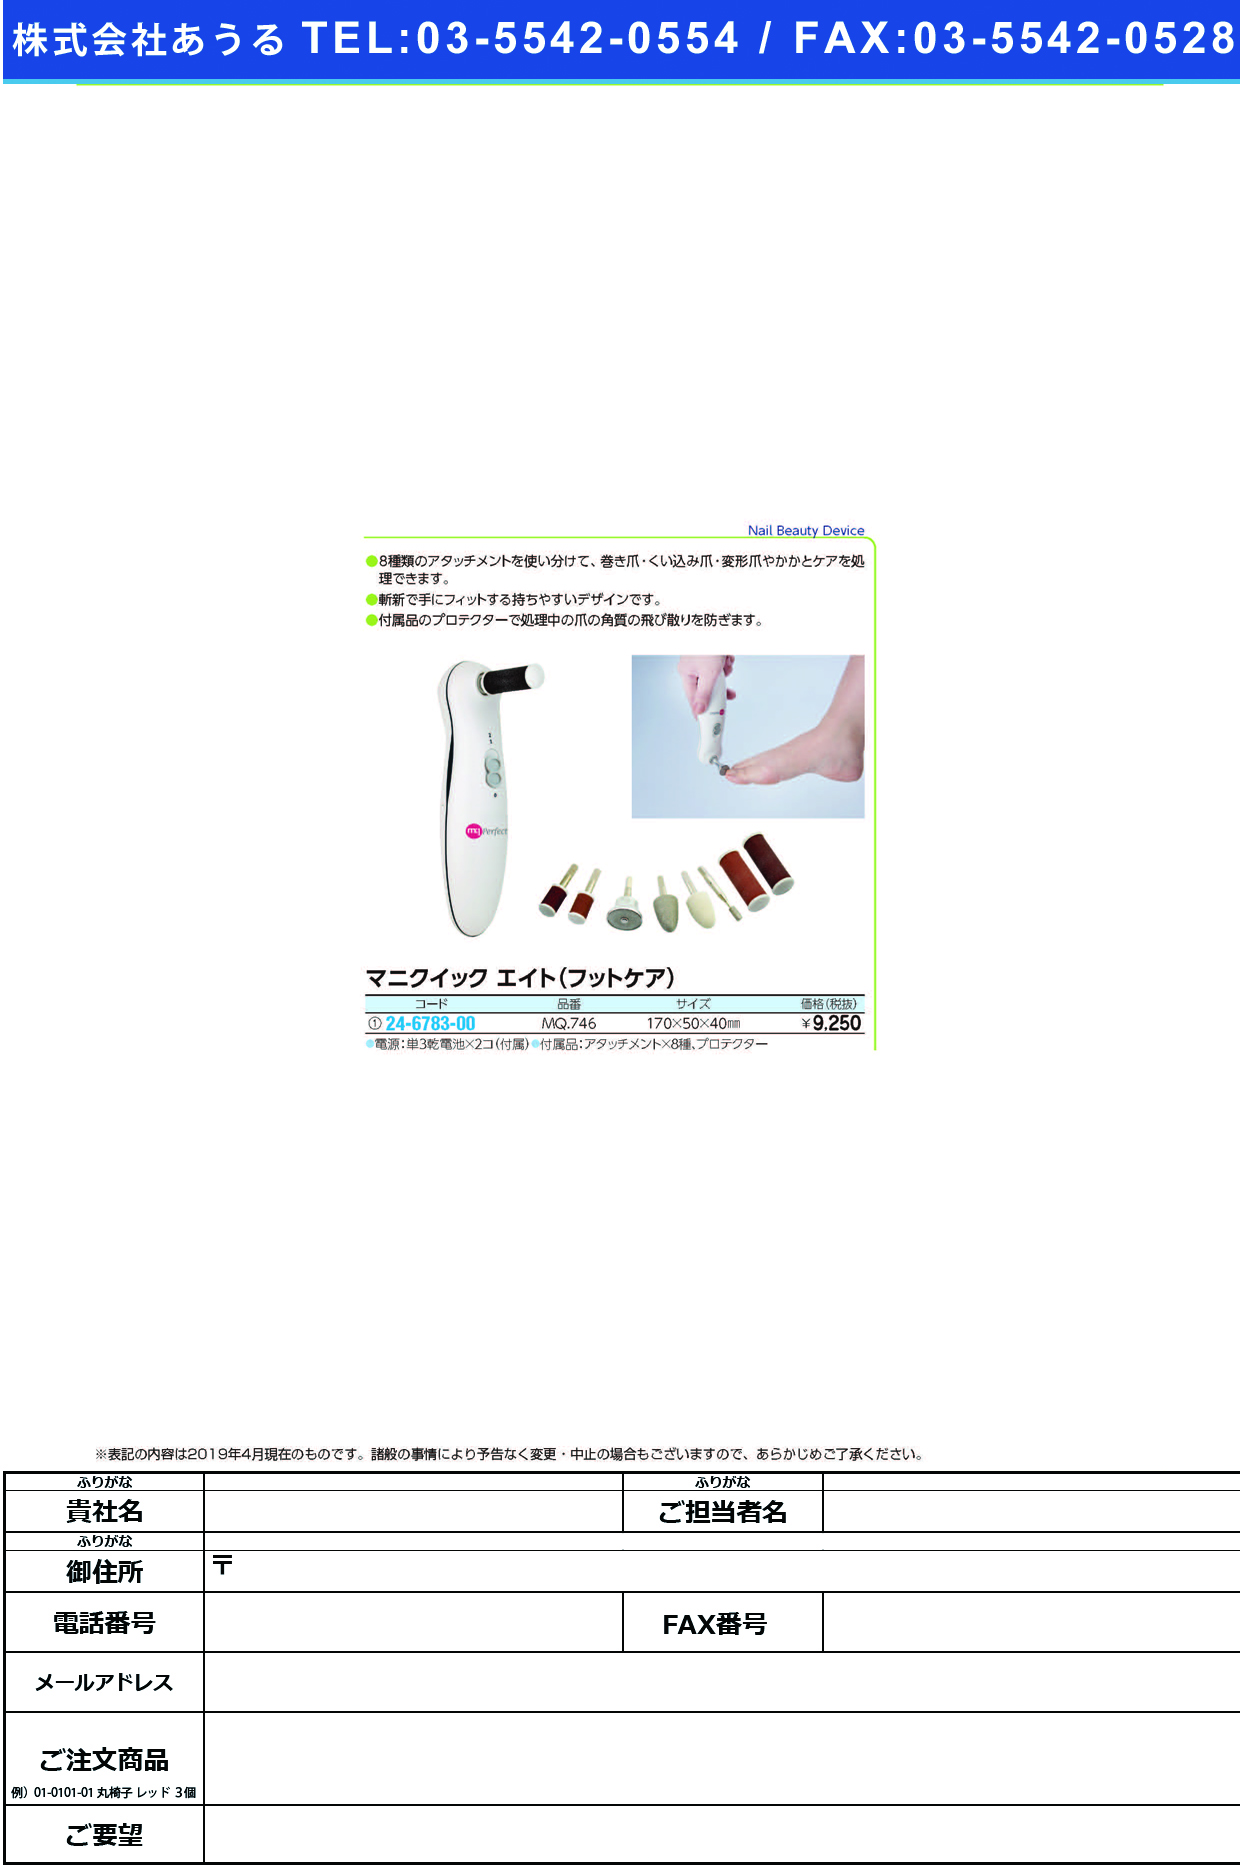 (24-6783-00)マニクイックエイト（フットケア） MQ746 ﾏﾆｸｲｯｸｴｲﾄ(ﾌｯﾄｹｱ)【1台単位】【2019年カタログ商品】